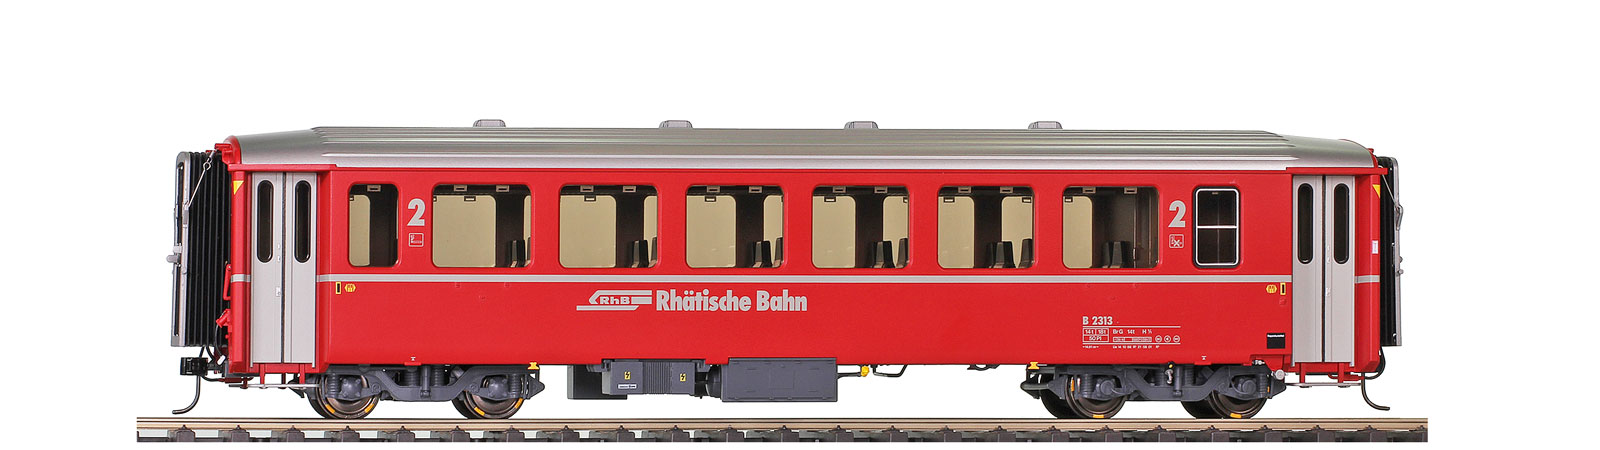 0m RhB B 2313 EWI refit Logo roter 2. Klasse Personenwagen verkürzt für Bernina-Bahn